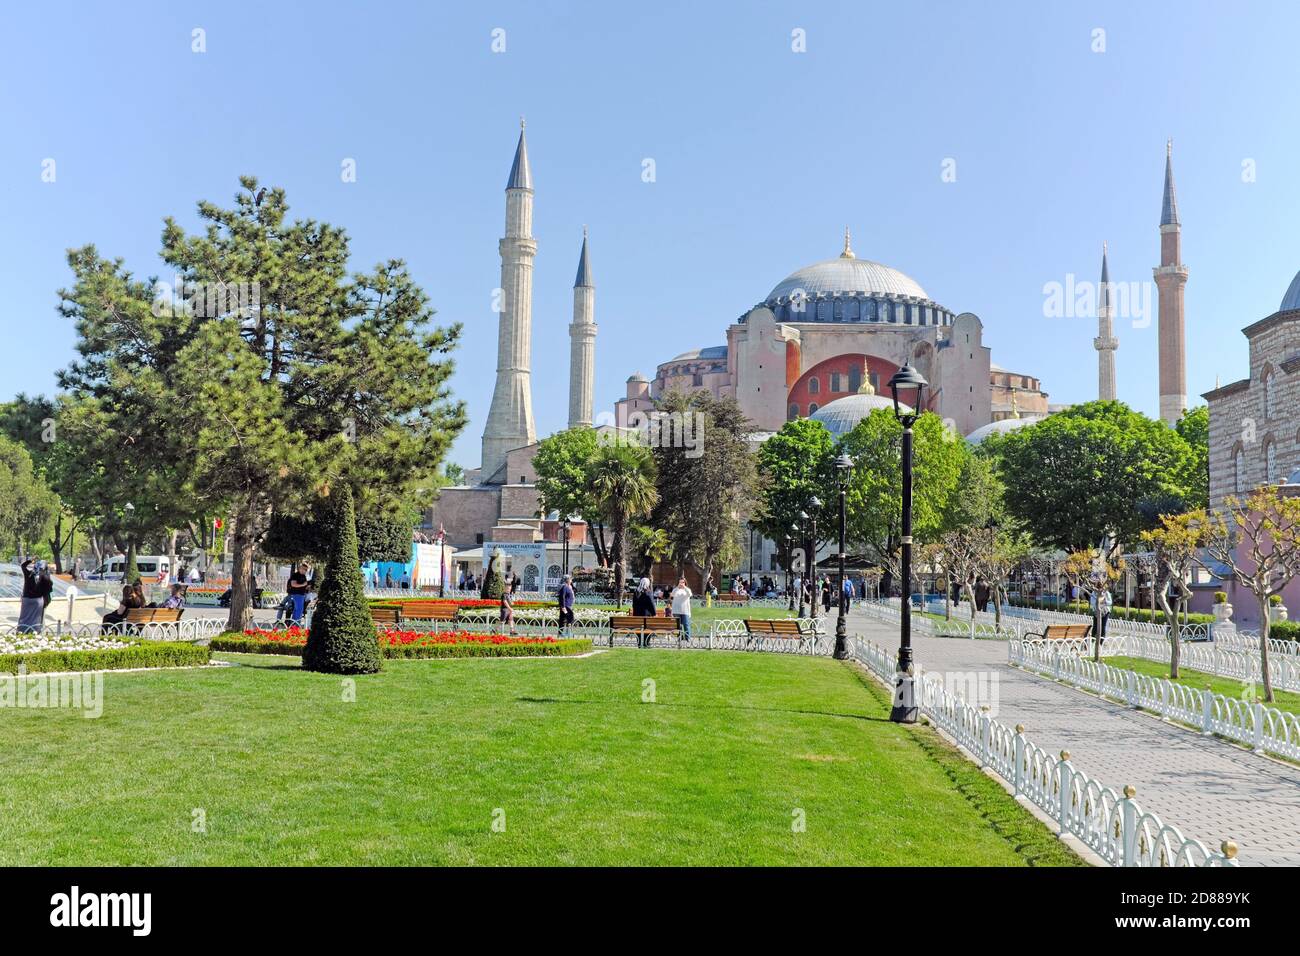 Die Hagia Sophia Heilige große Moschee, früher die Kirche der Hagia Sophia, in Sultanahmet in Istanbul, Türkei, wurde 2020 in eine funktionierende Moschee zurückgeführt. Stockfoto